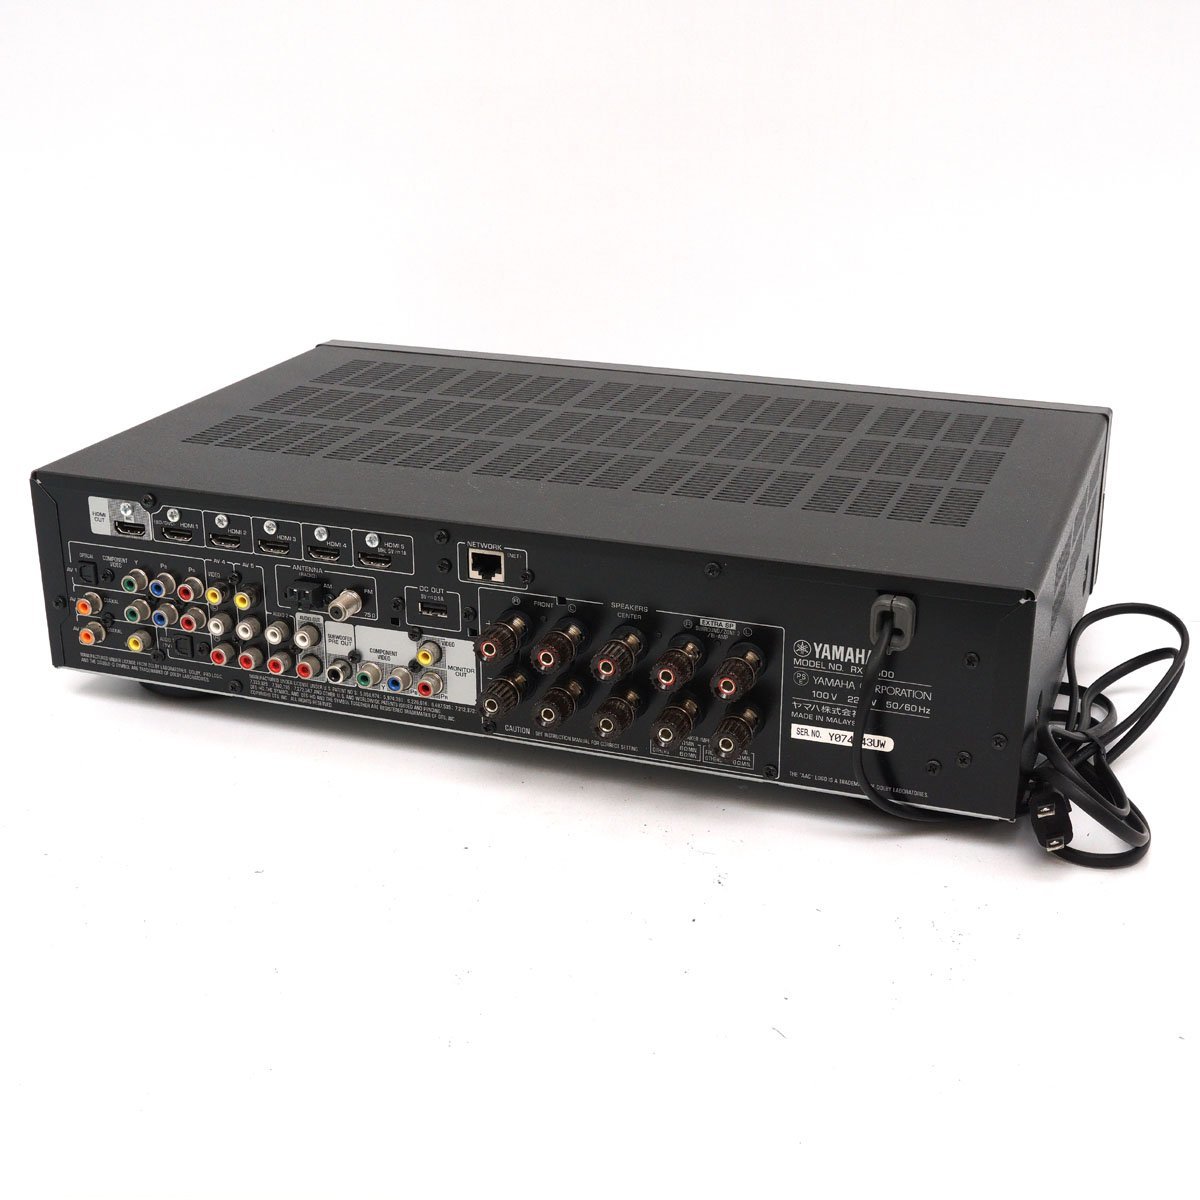 【美品】YAMAHA ヤマハ AVレシーバー RX-S600 5.1chサラウンド ネットワーク再生対応 ブラック AVアンプ 音響機材 [H800498]_画像3